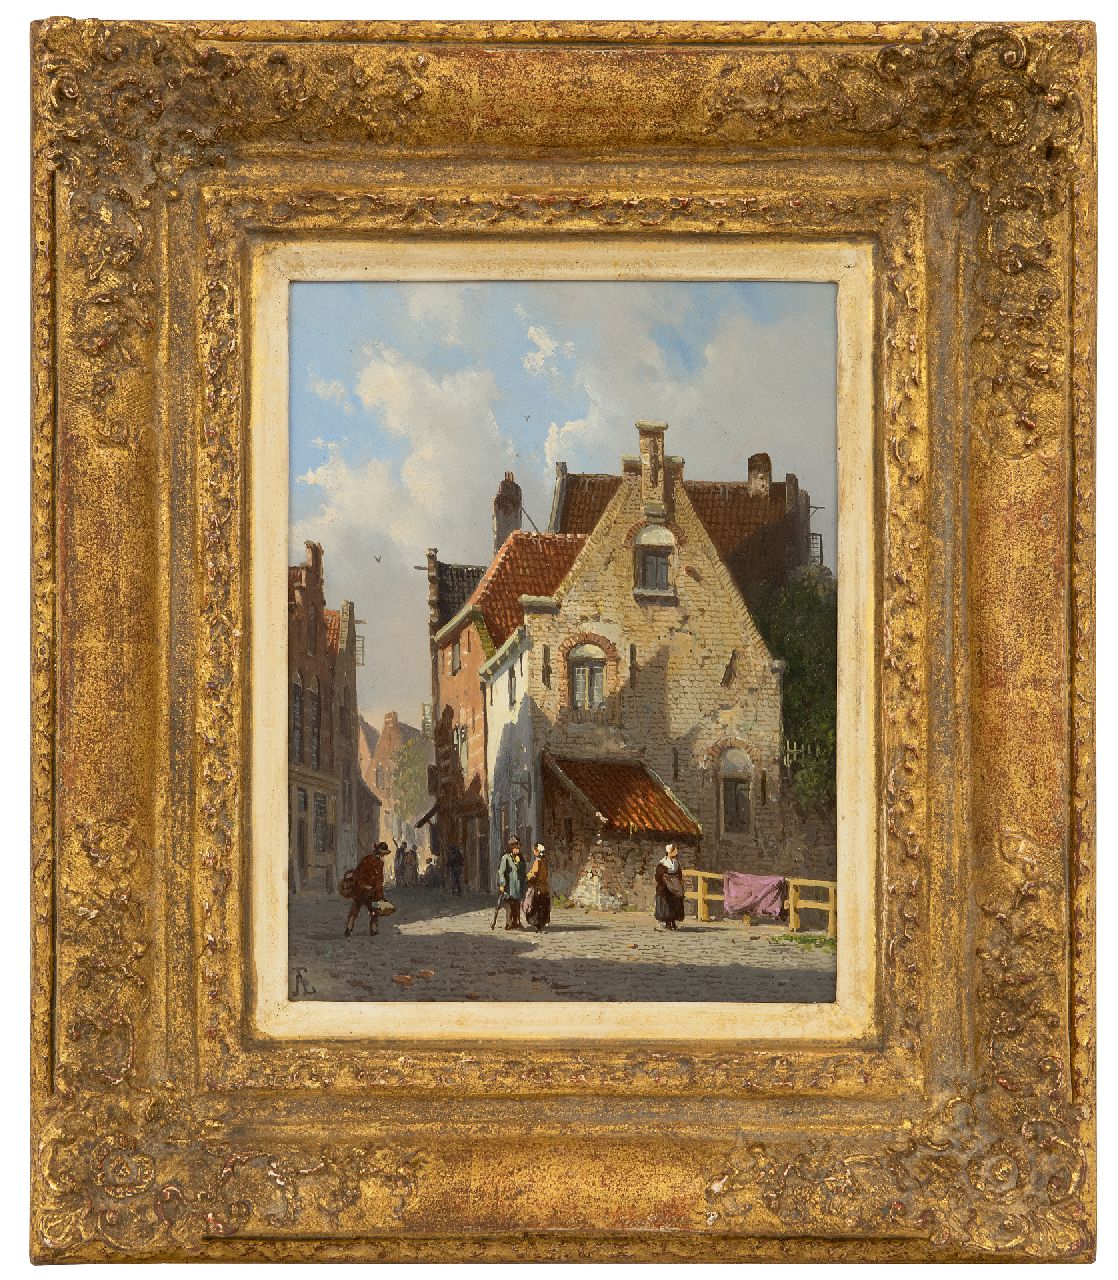 Eversen A.  | Adrianus Eversen | Schilderijen te koop aangeboden | Zonnig straatje met figuren, olieverf op paneel 19,1 x 14,5 cm, gesigneerd linksonder met monogram